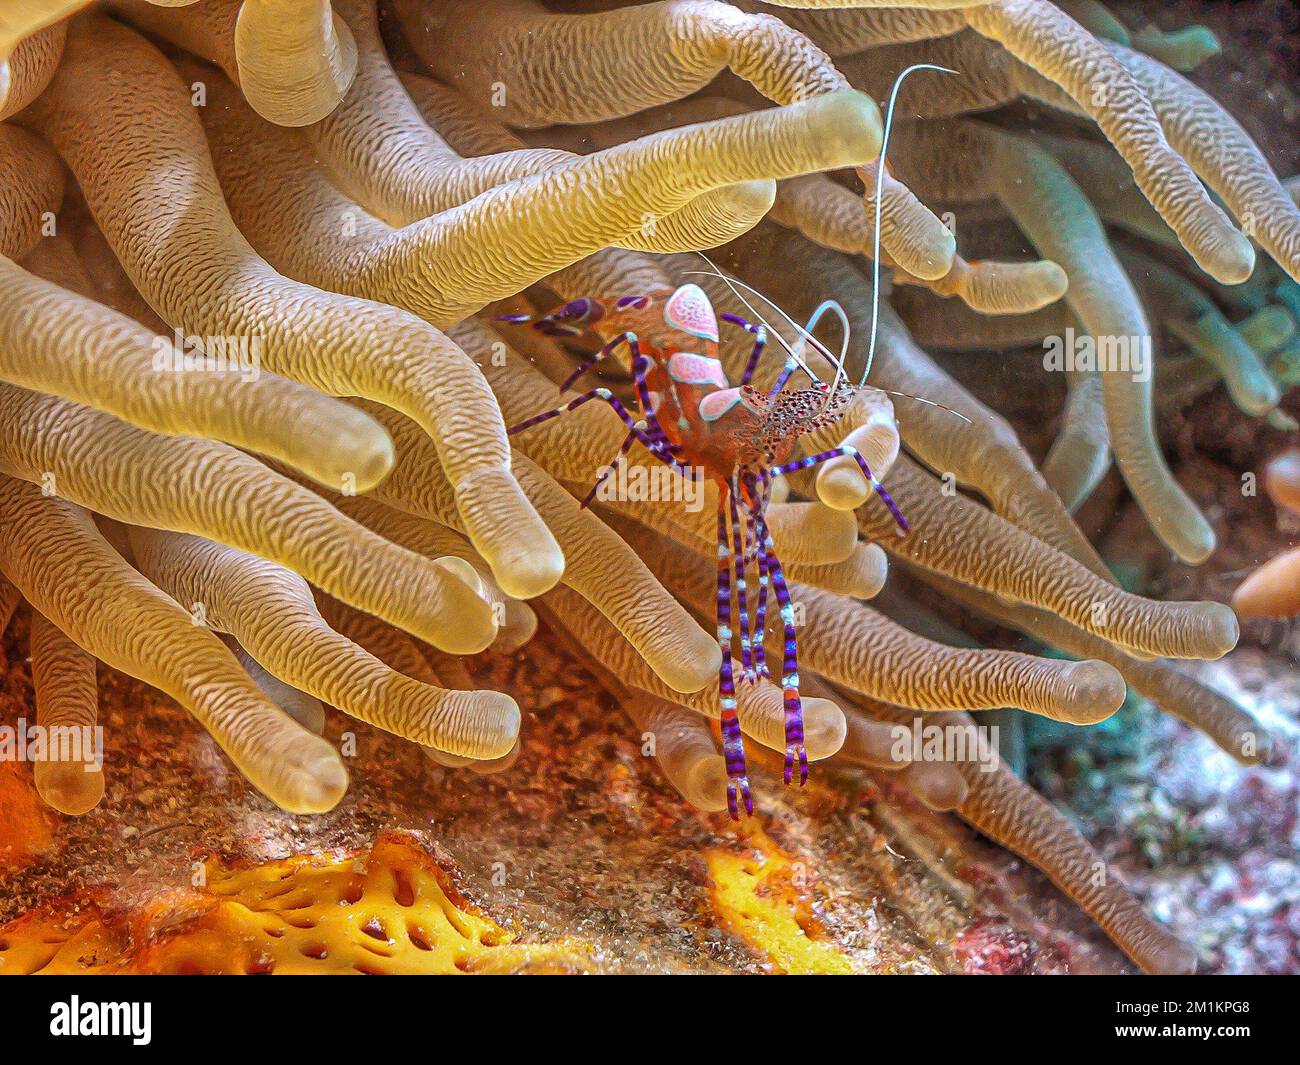 La crevette tachetée Periclimenes yucatanicus,plus propre, est une sorte de crevettes plus propres communs à la mer des Caraïbes. Banque D'Images